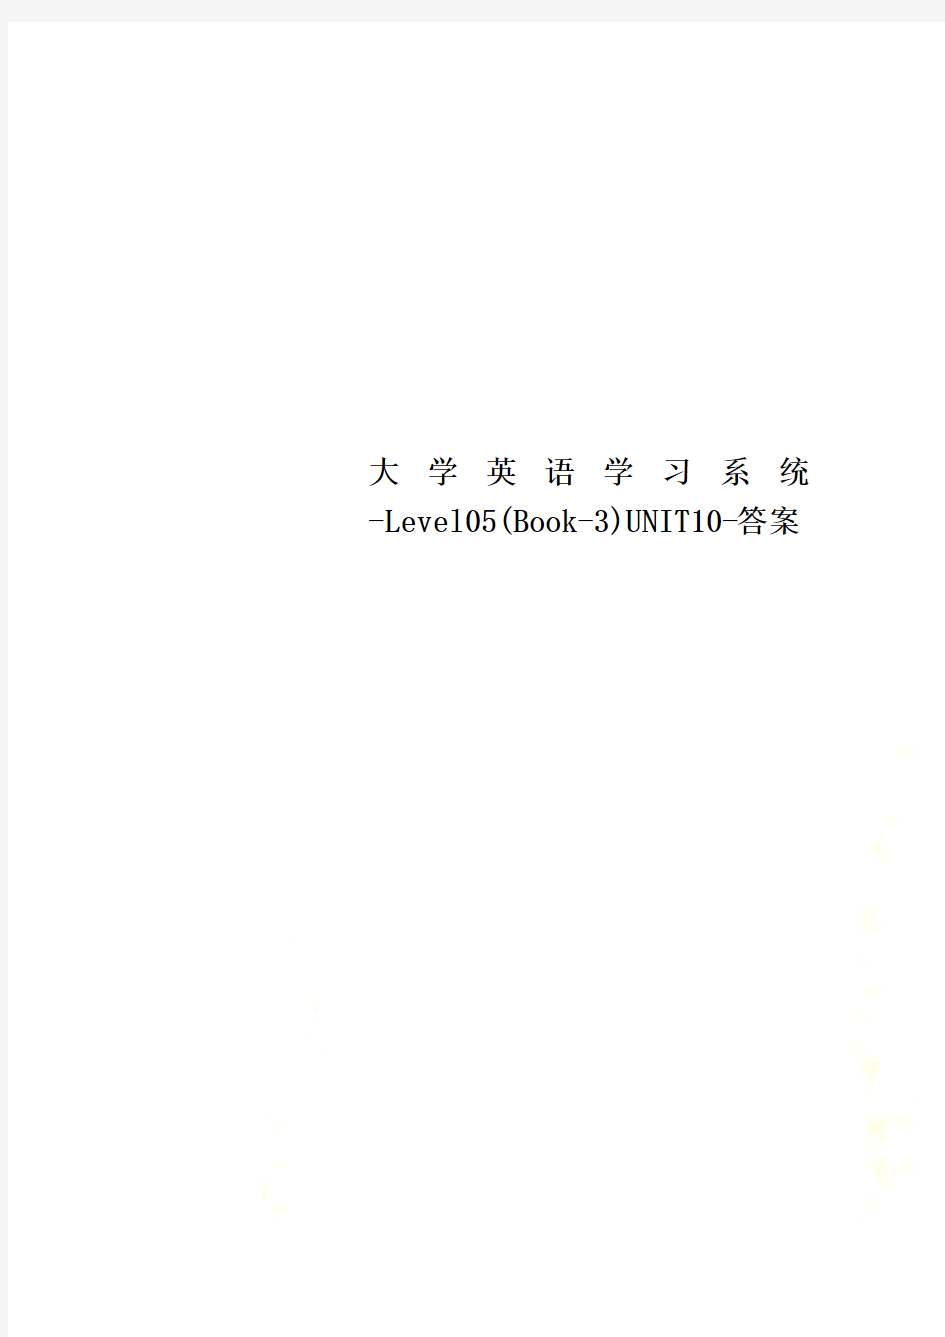 大学英语学习系统-Level05(Book-3)UNIT10-答案